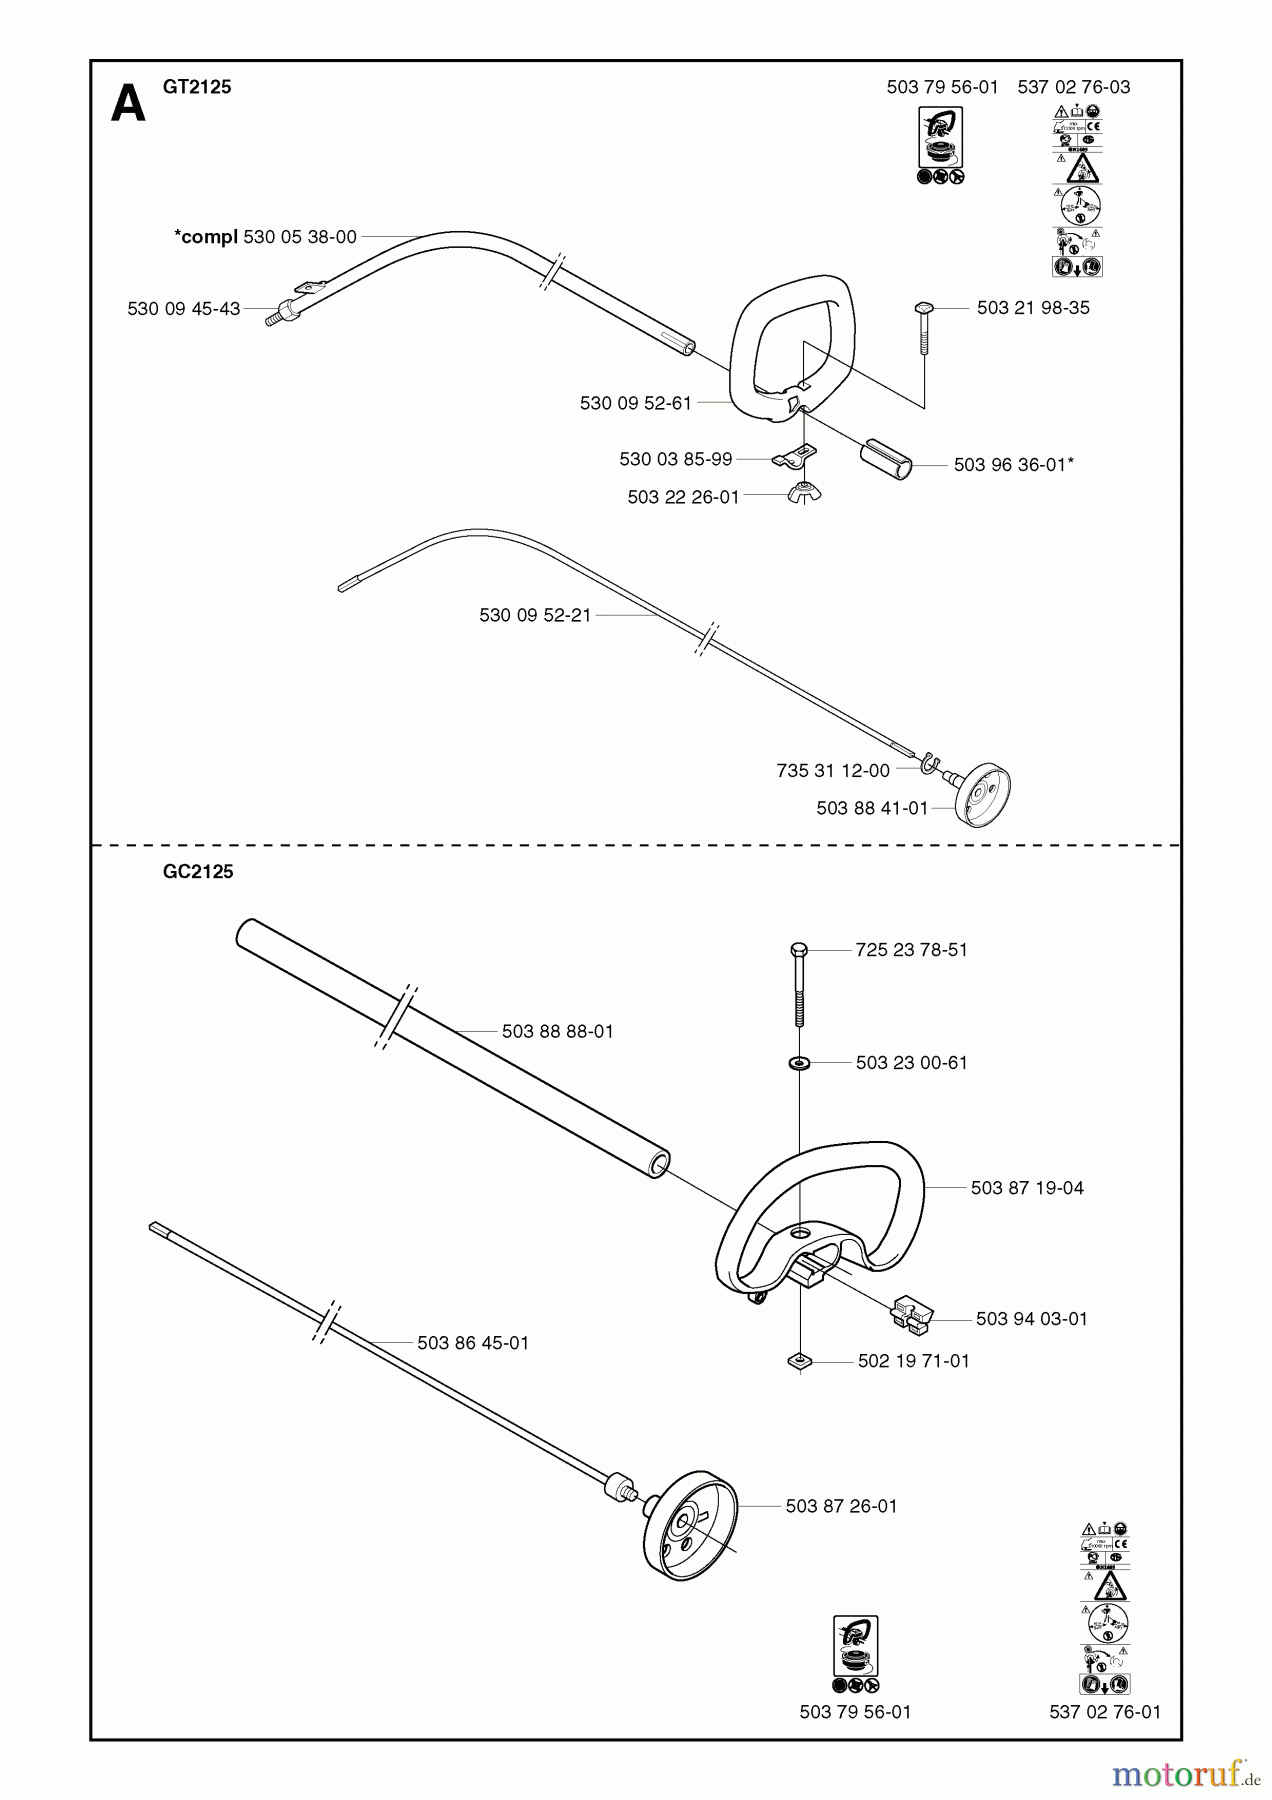  Jonsered Motorsensen, Trimmer GC2125 - Jonsered String/Brush Trimmer (2003-03) SHAFT HANDLE #3